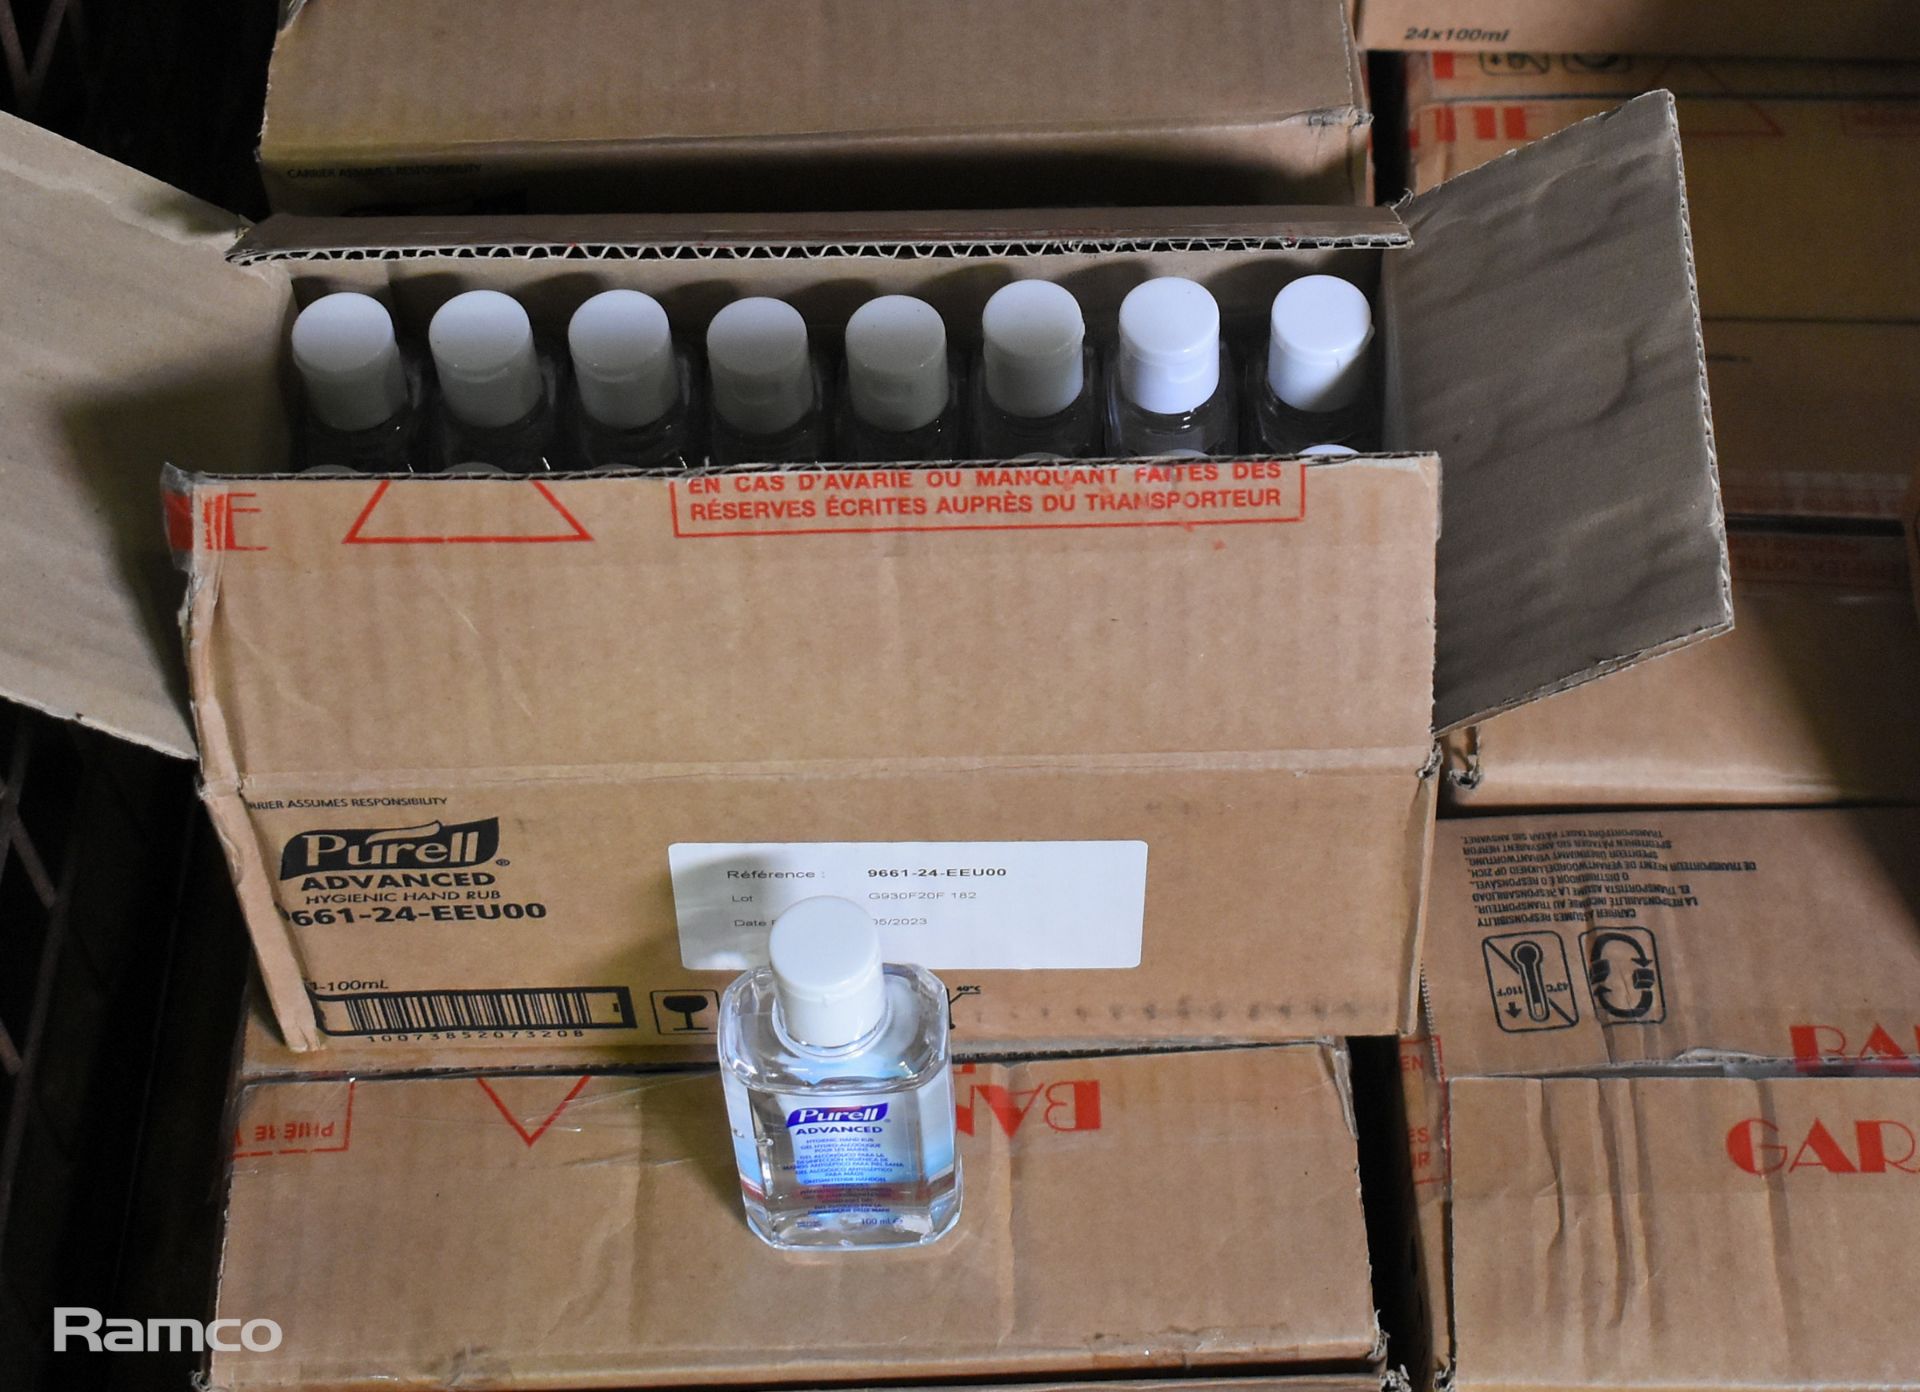 23 boxes of Hand sanitizing/Hygienic gel - Expired - mixed bottle sizes - Image 2 of 7